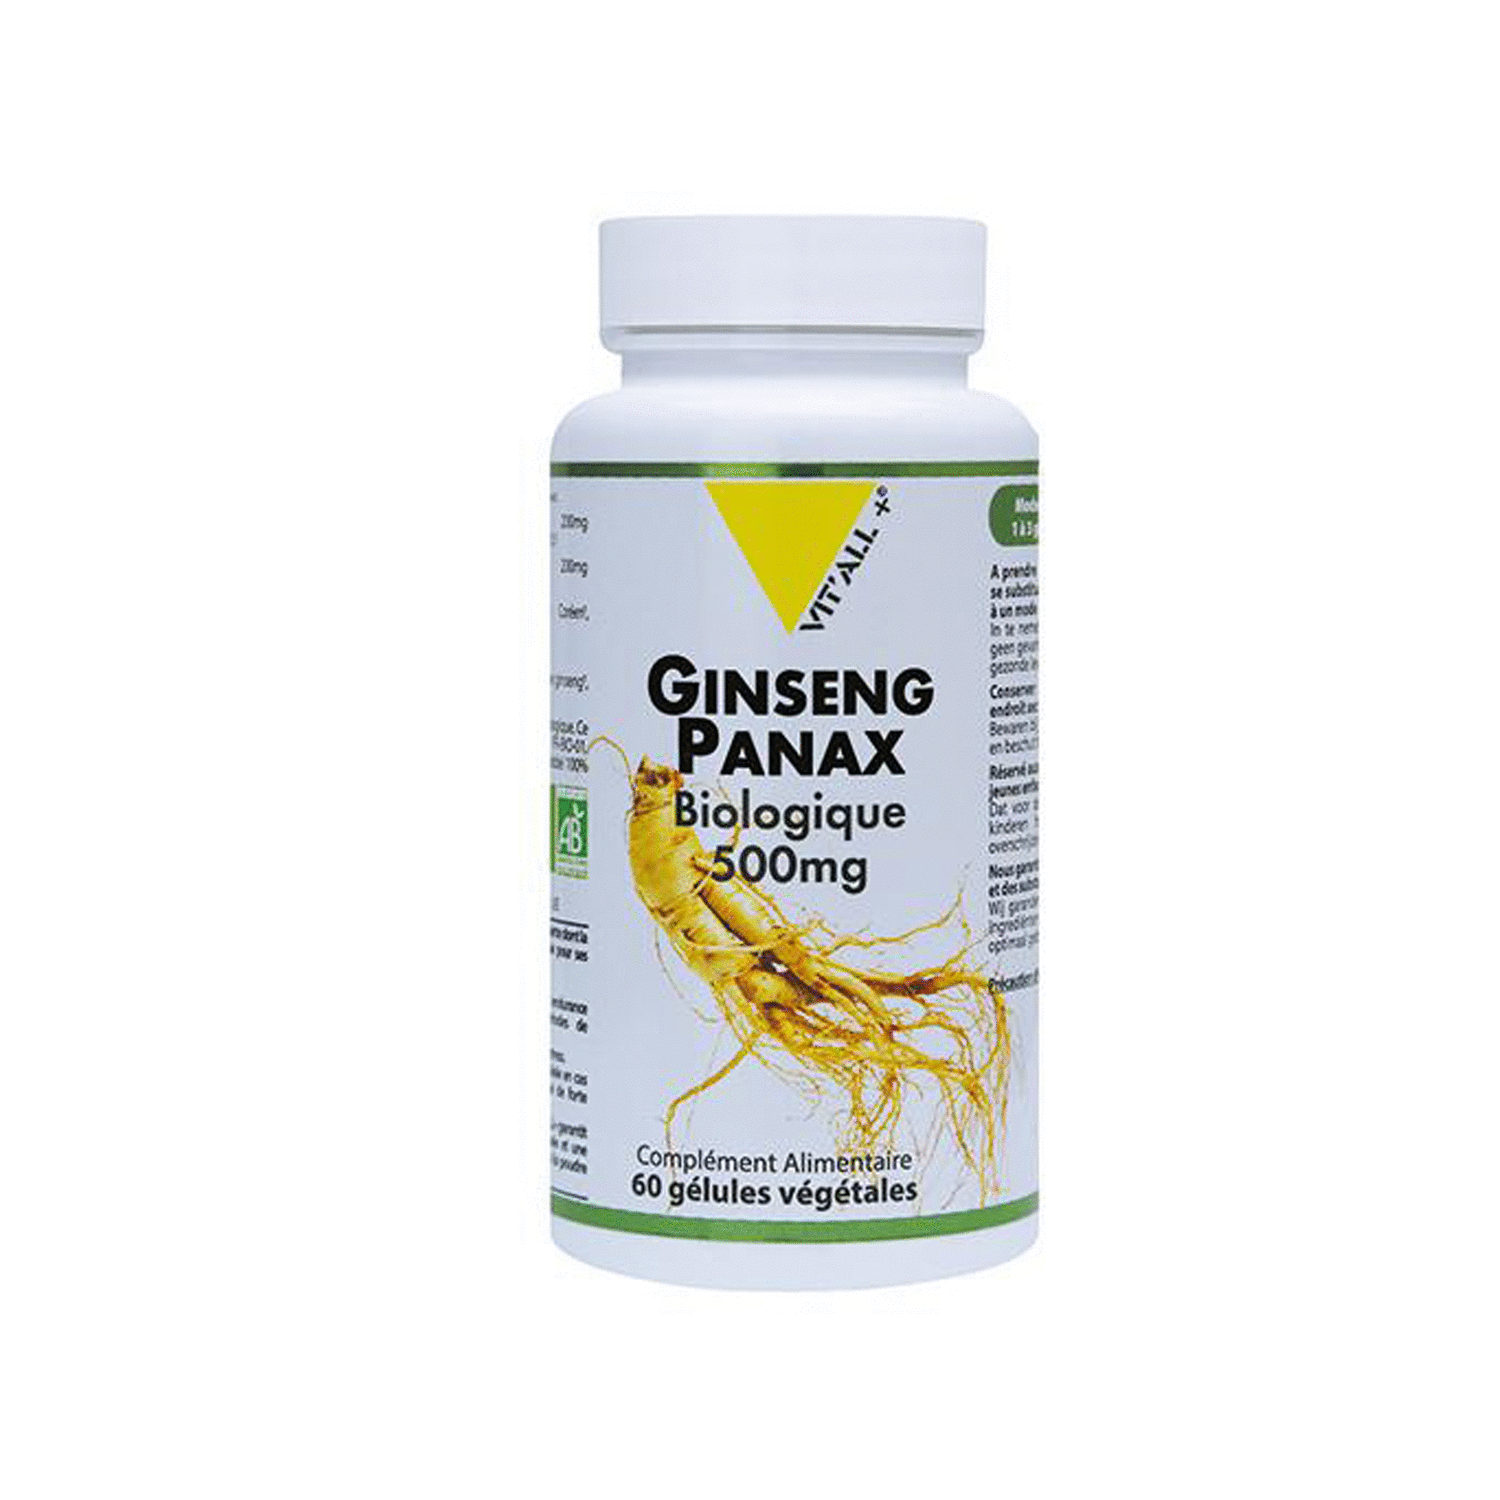 Ginseng Panax  bio - Vitalité, bien-être physique et mental.